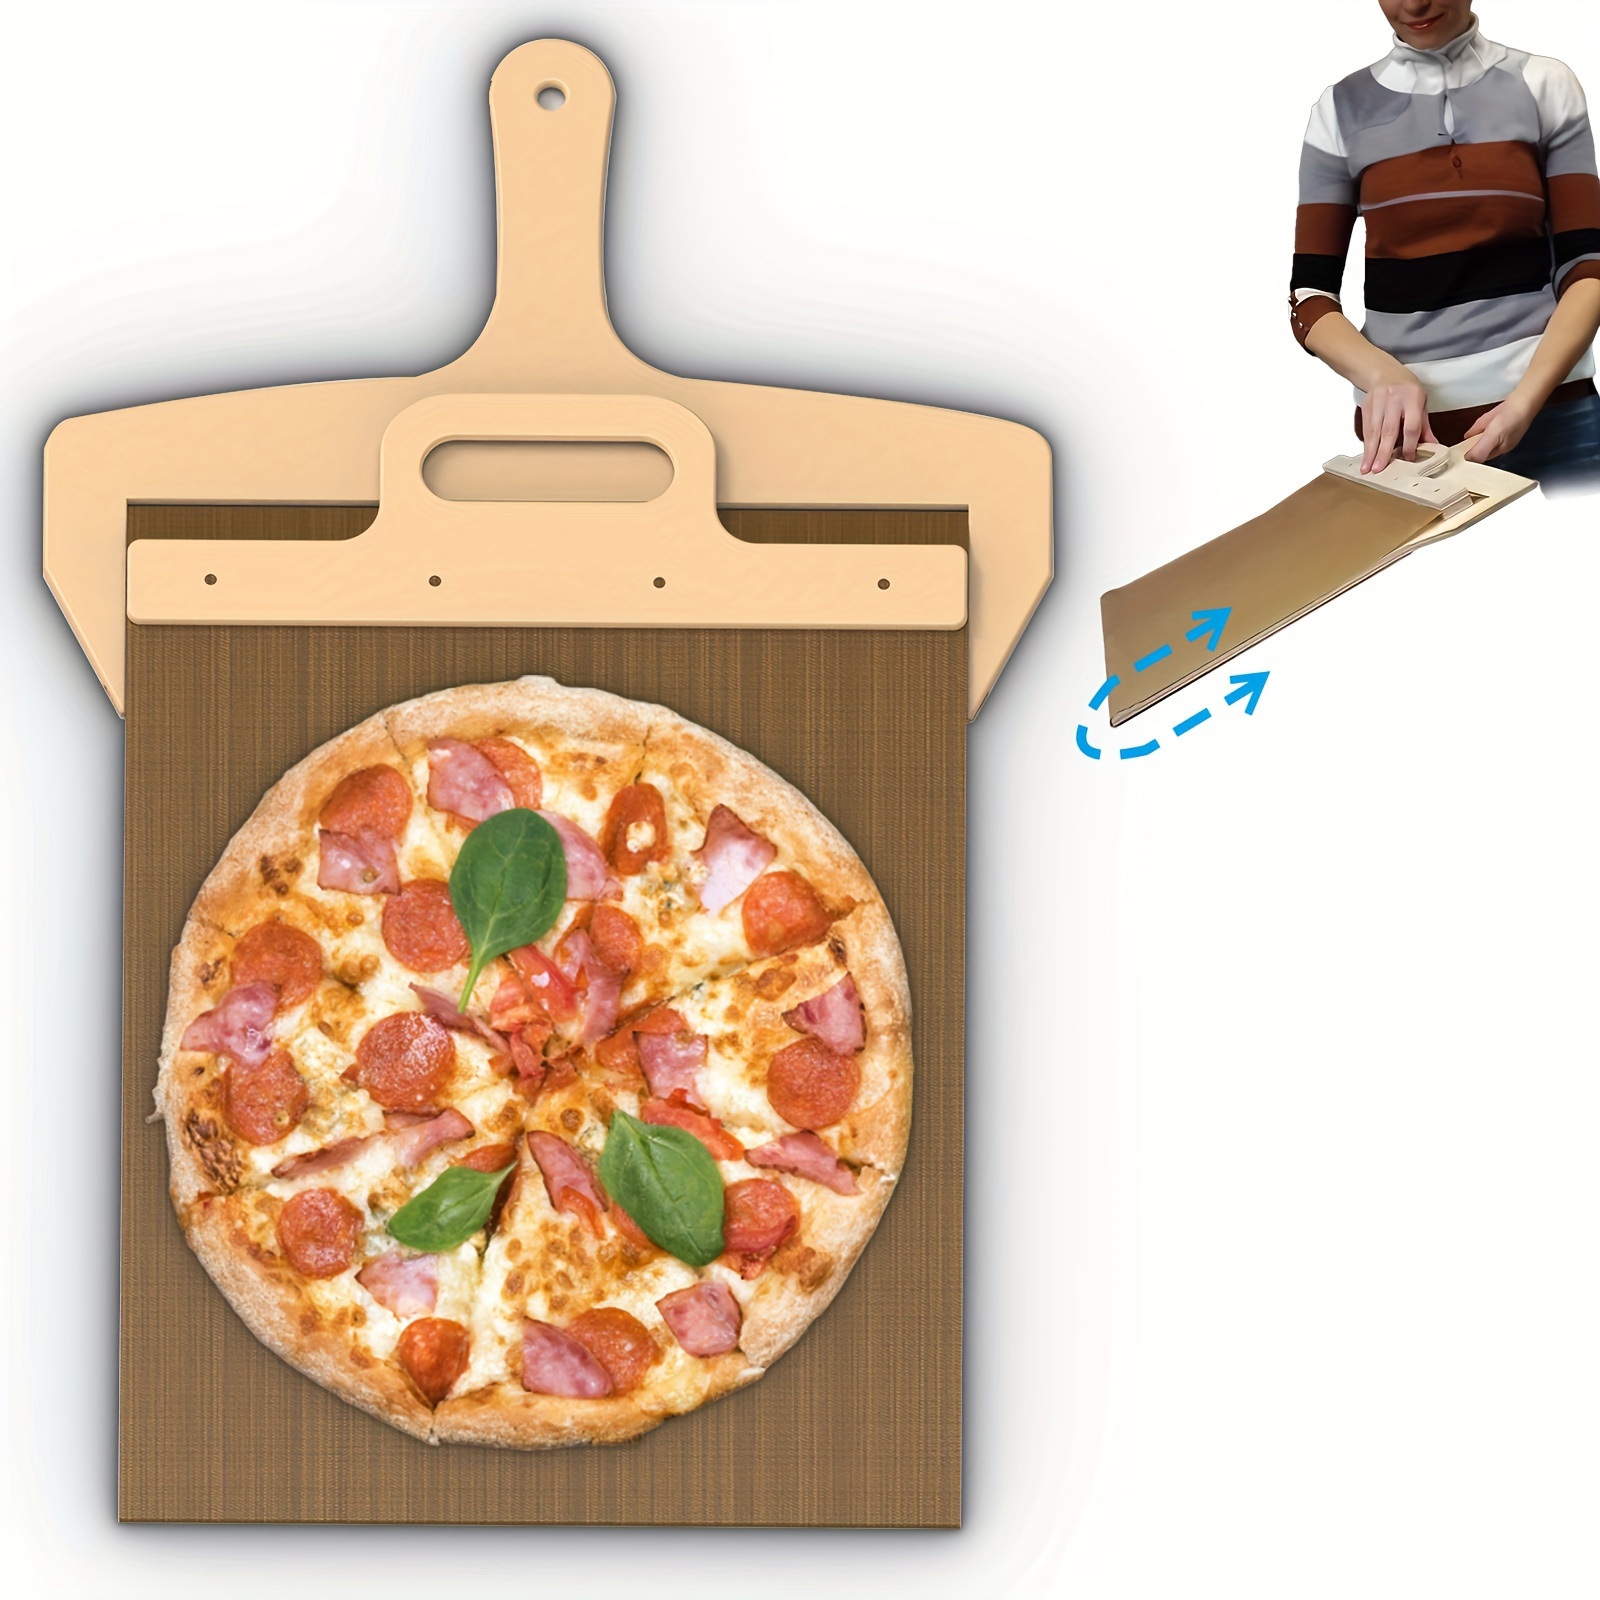 Les accessoires pour faire la pizza chez vous